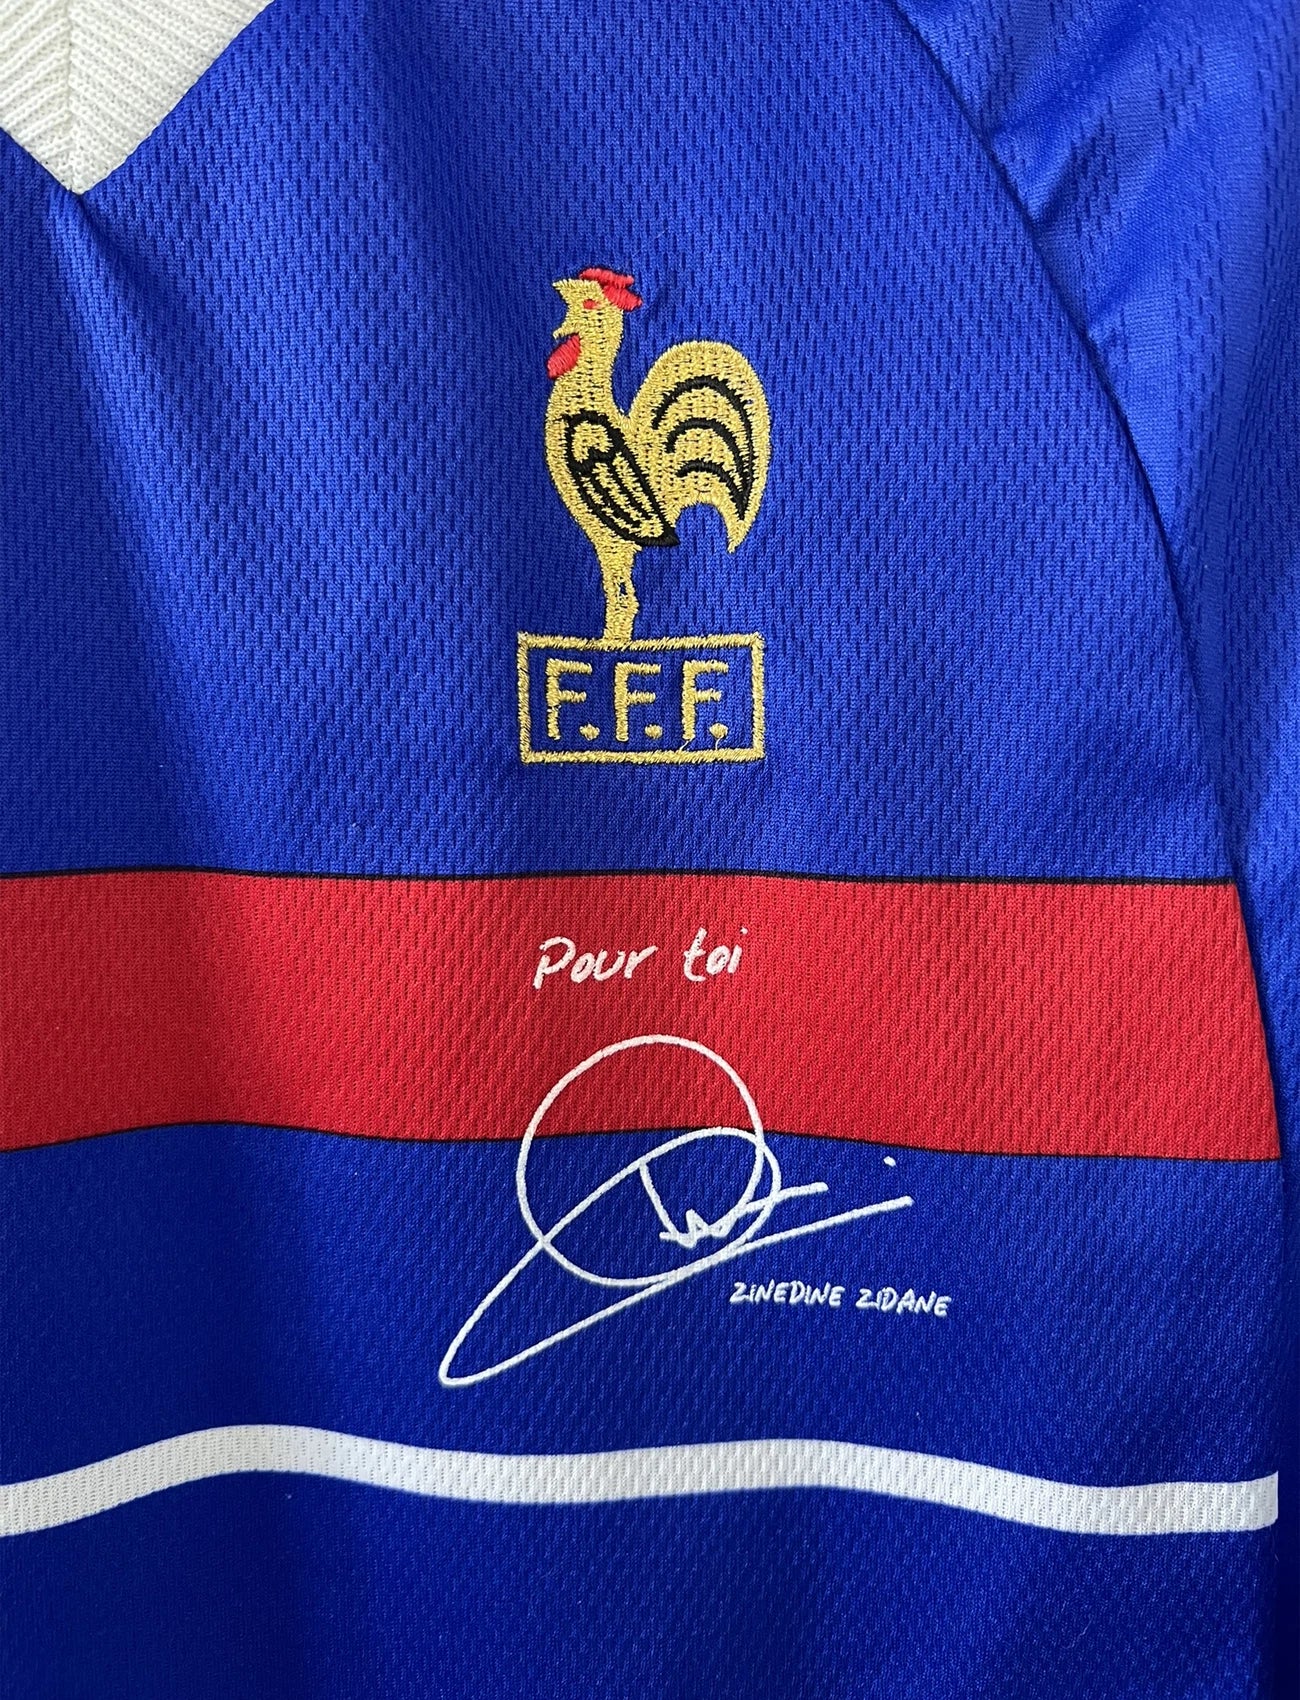 Maillot de foot vintage bleu blanc et rouge domicile de l'équipe de France 1998. On peut retrouver le sponsor adidas. On peut voir le coq sans l'étoile avec la signature "pour toi" de Zinedine Zidane. Il s'agit d'un maillot authentique.